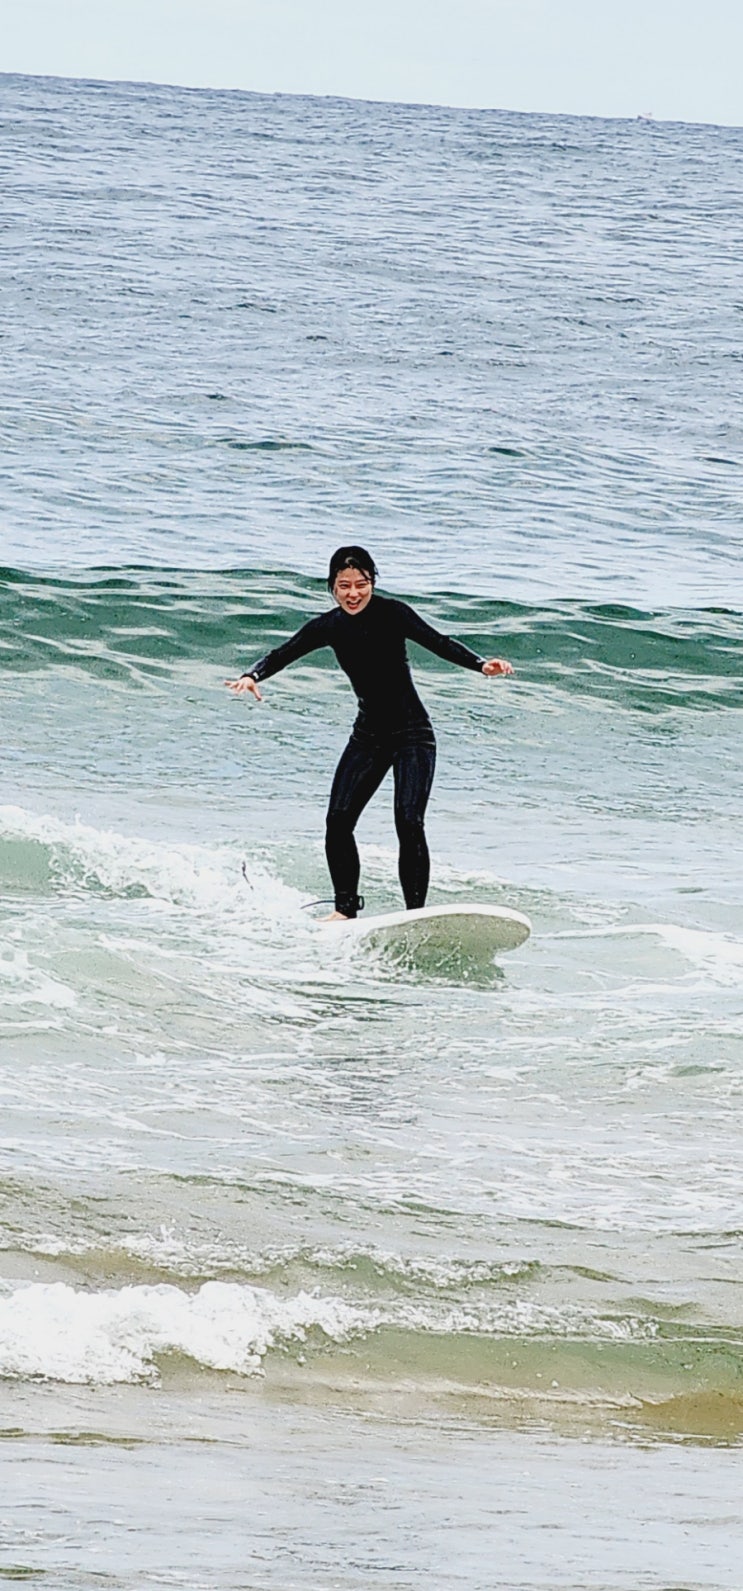 [속초 DAY 2] 속초 서핑 코랄서프에서 첫 가을 서핑~! 서핑강습 + 프리서핑 까지!